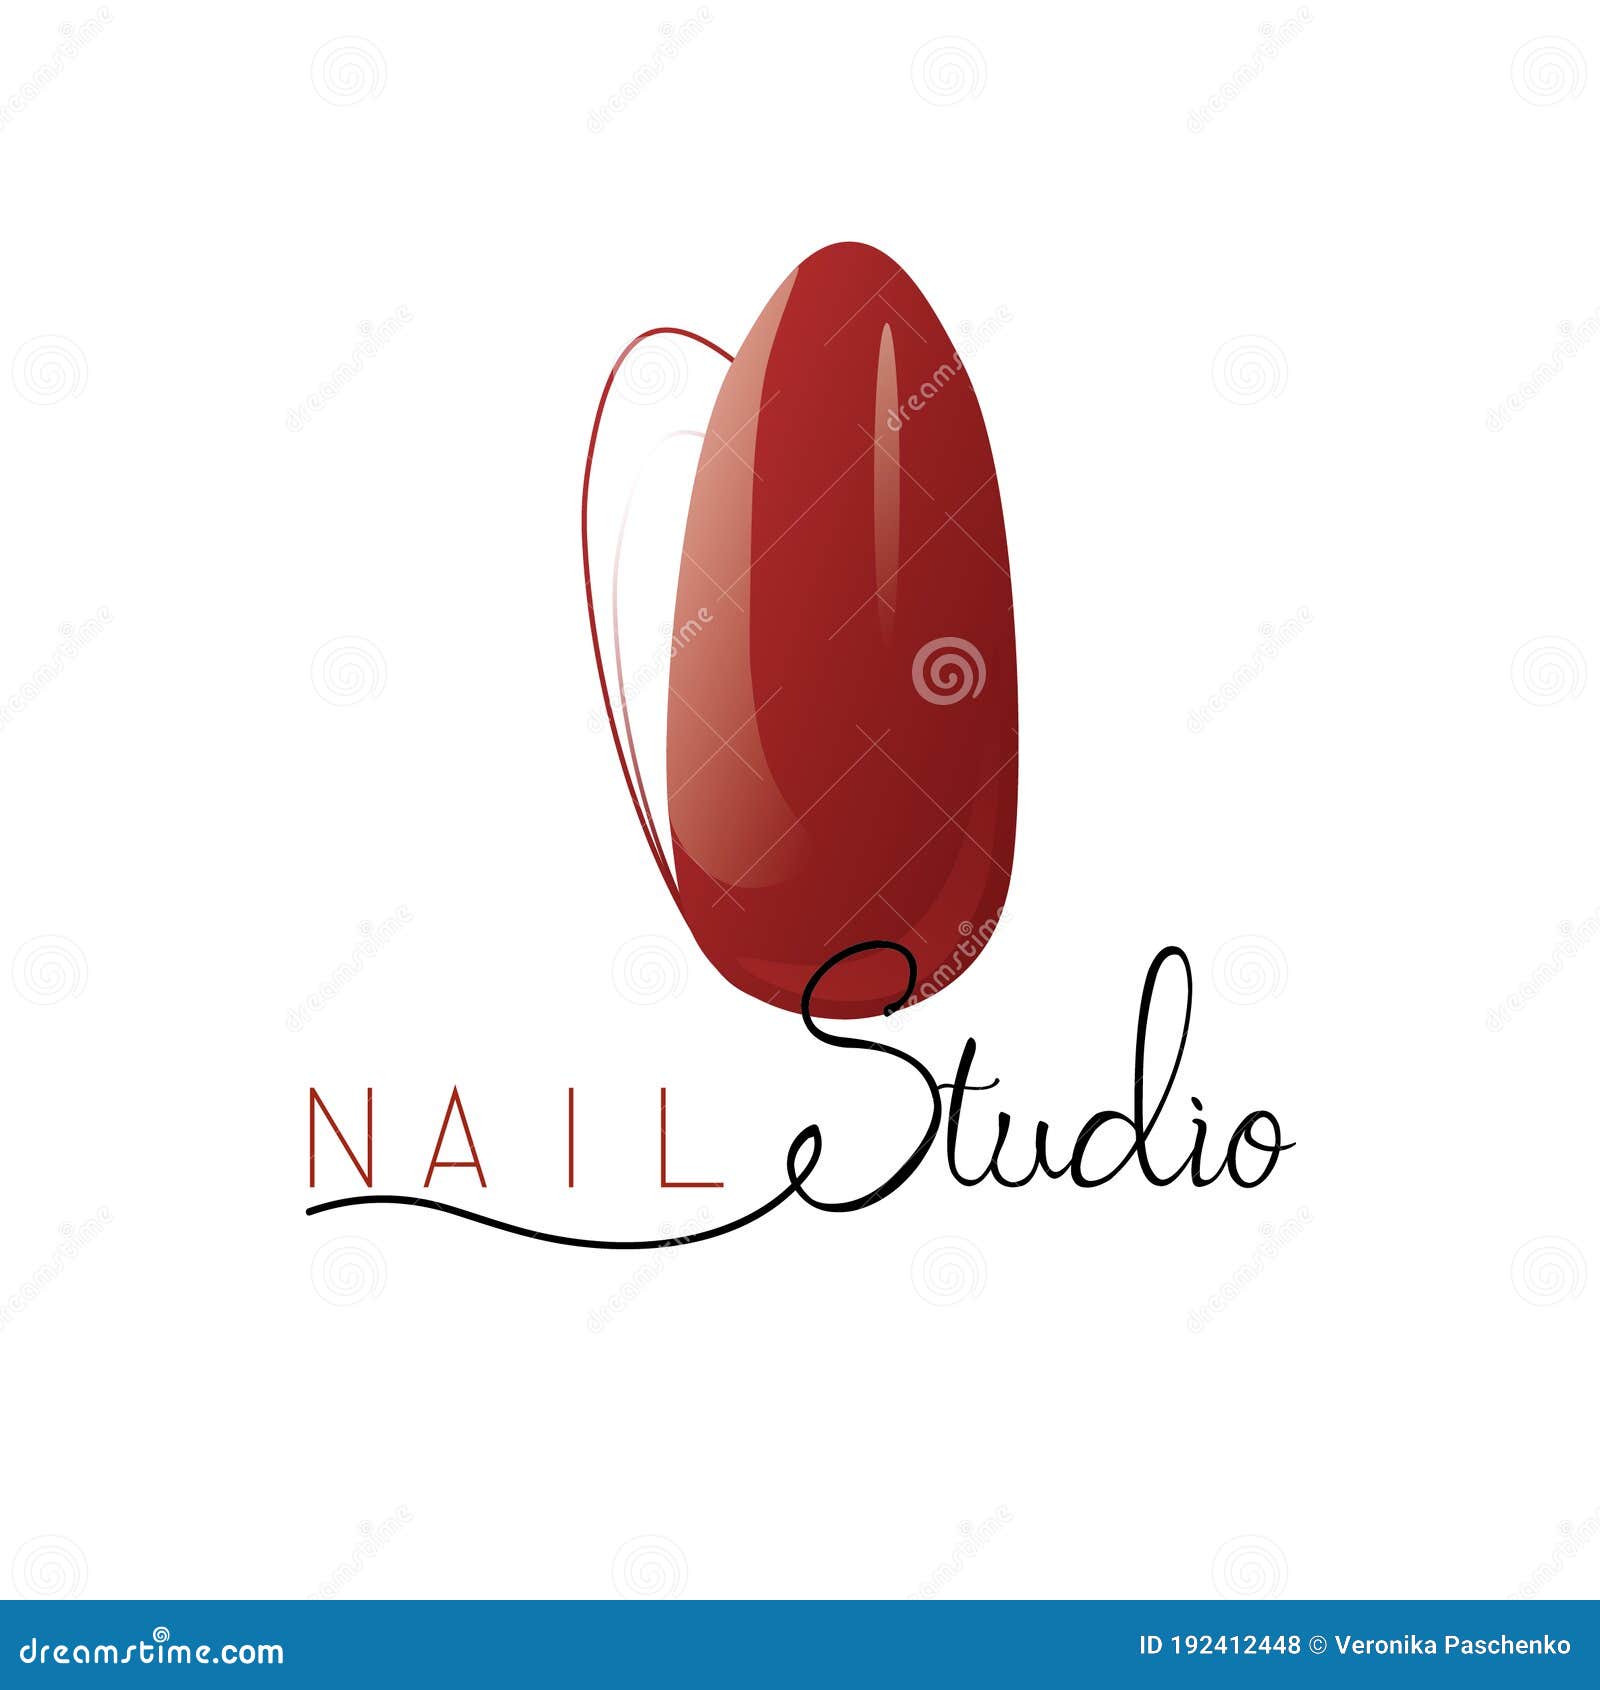 Entry #20 by Toefl for Nail Art logo design | Freelancer